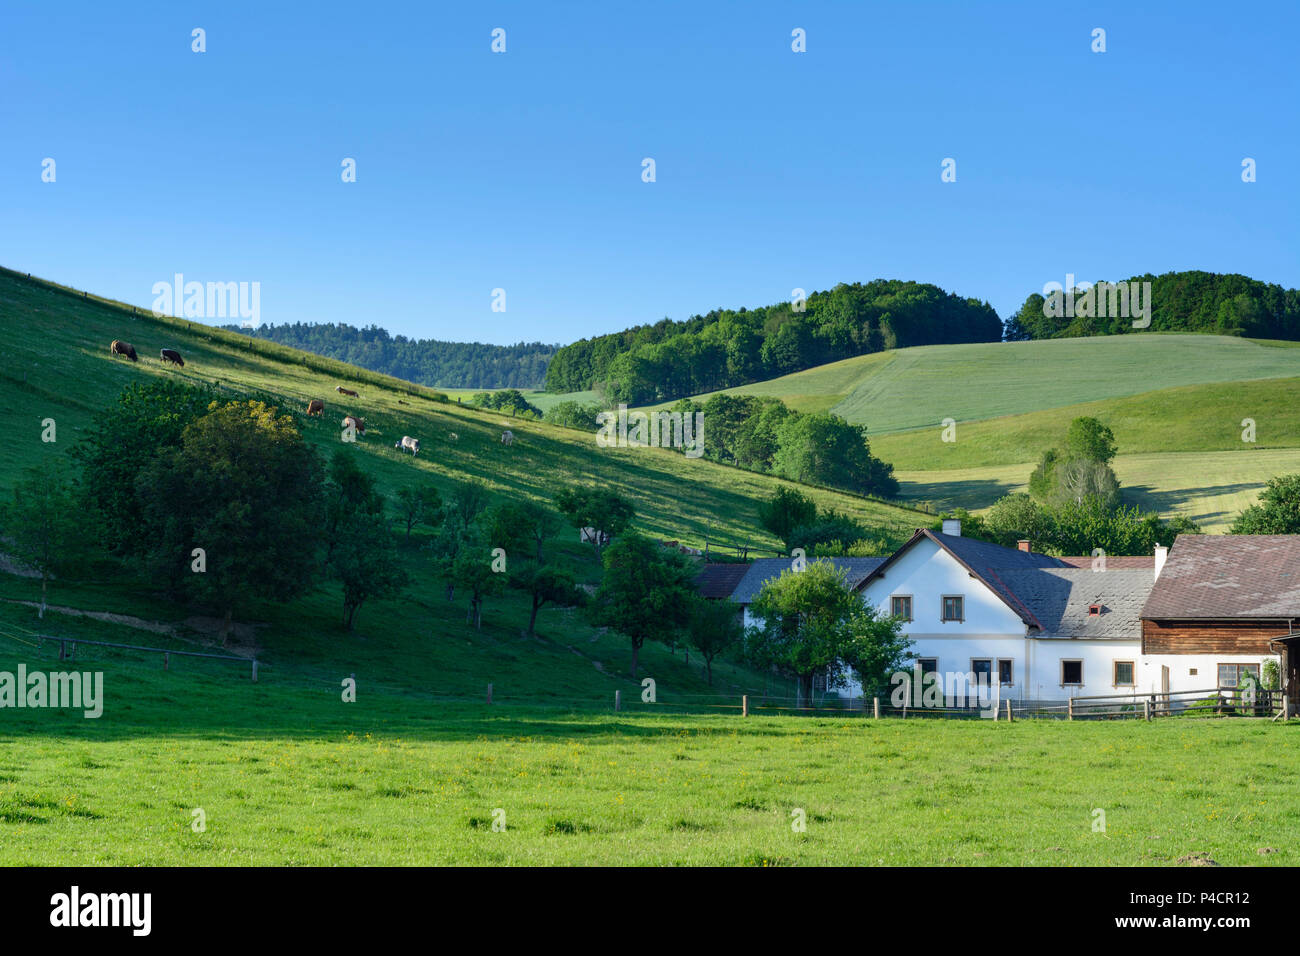 Hochneukirchen-Gschaidt, Bauernhof, Kühe, Bucklige Welt, Wiener Alpen  (Alpen), Wien, Lower Austria, Austria Stockfotografie - Alamy